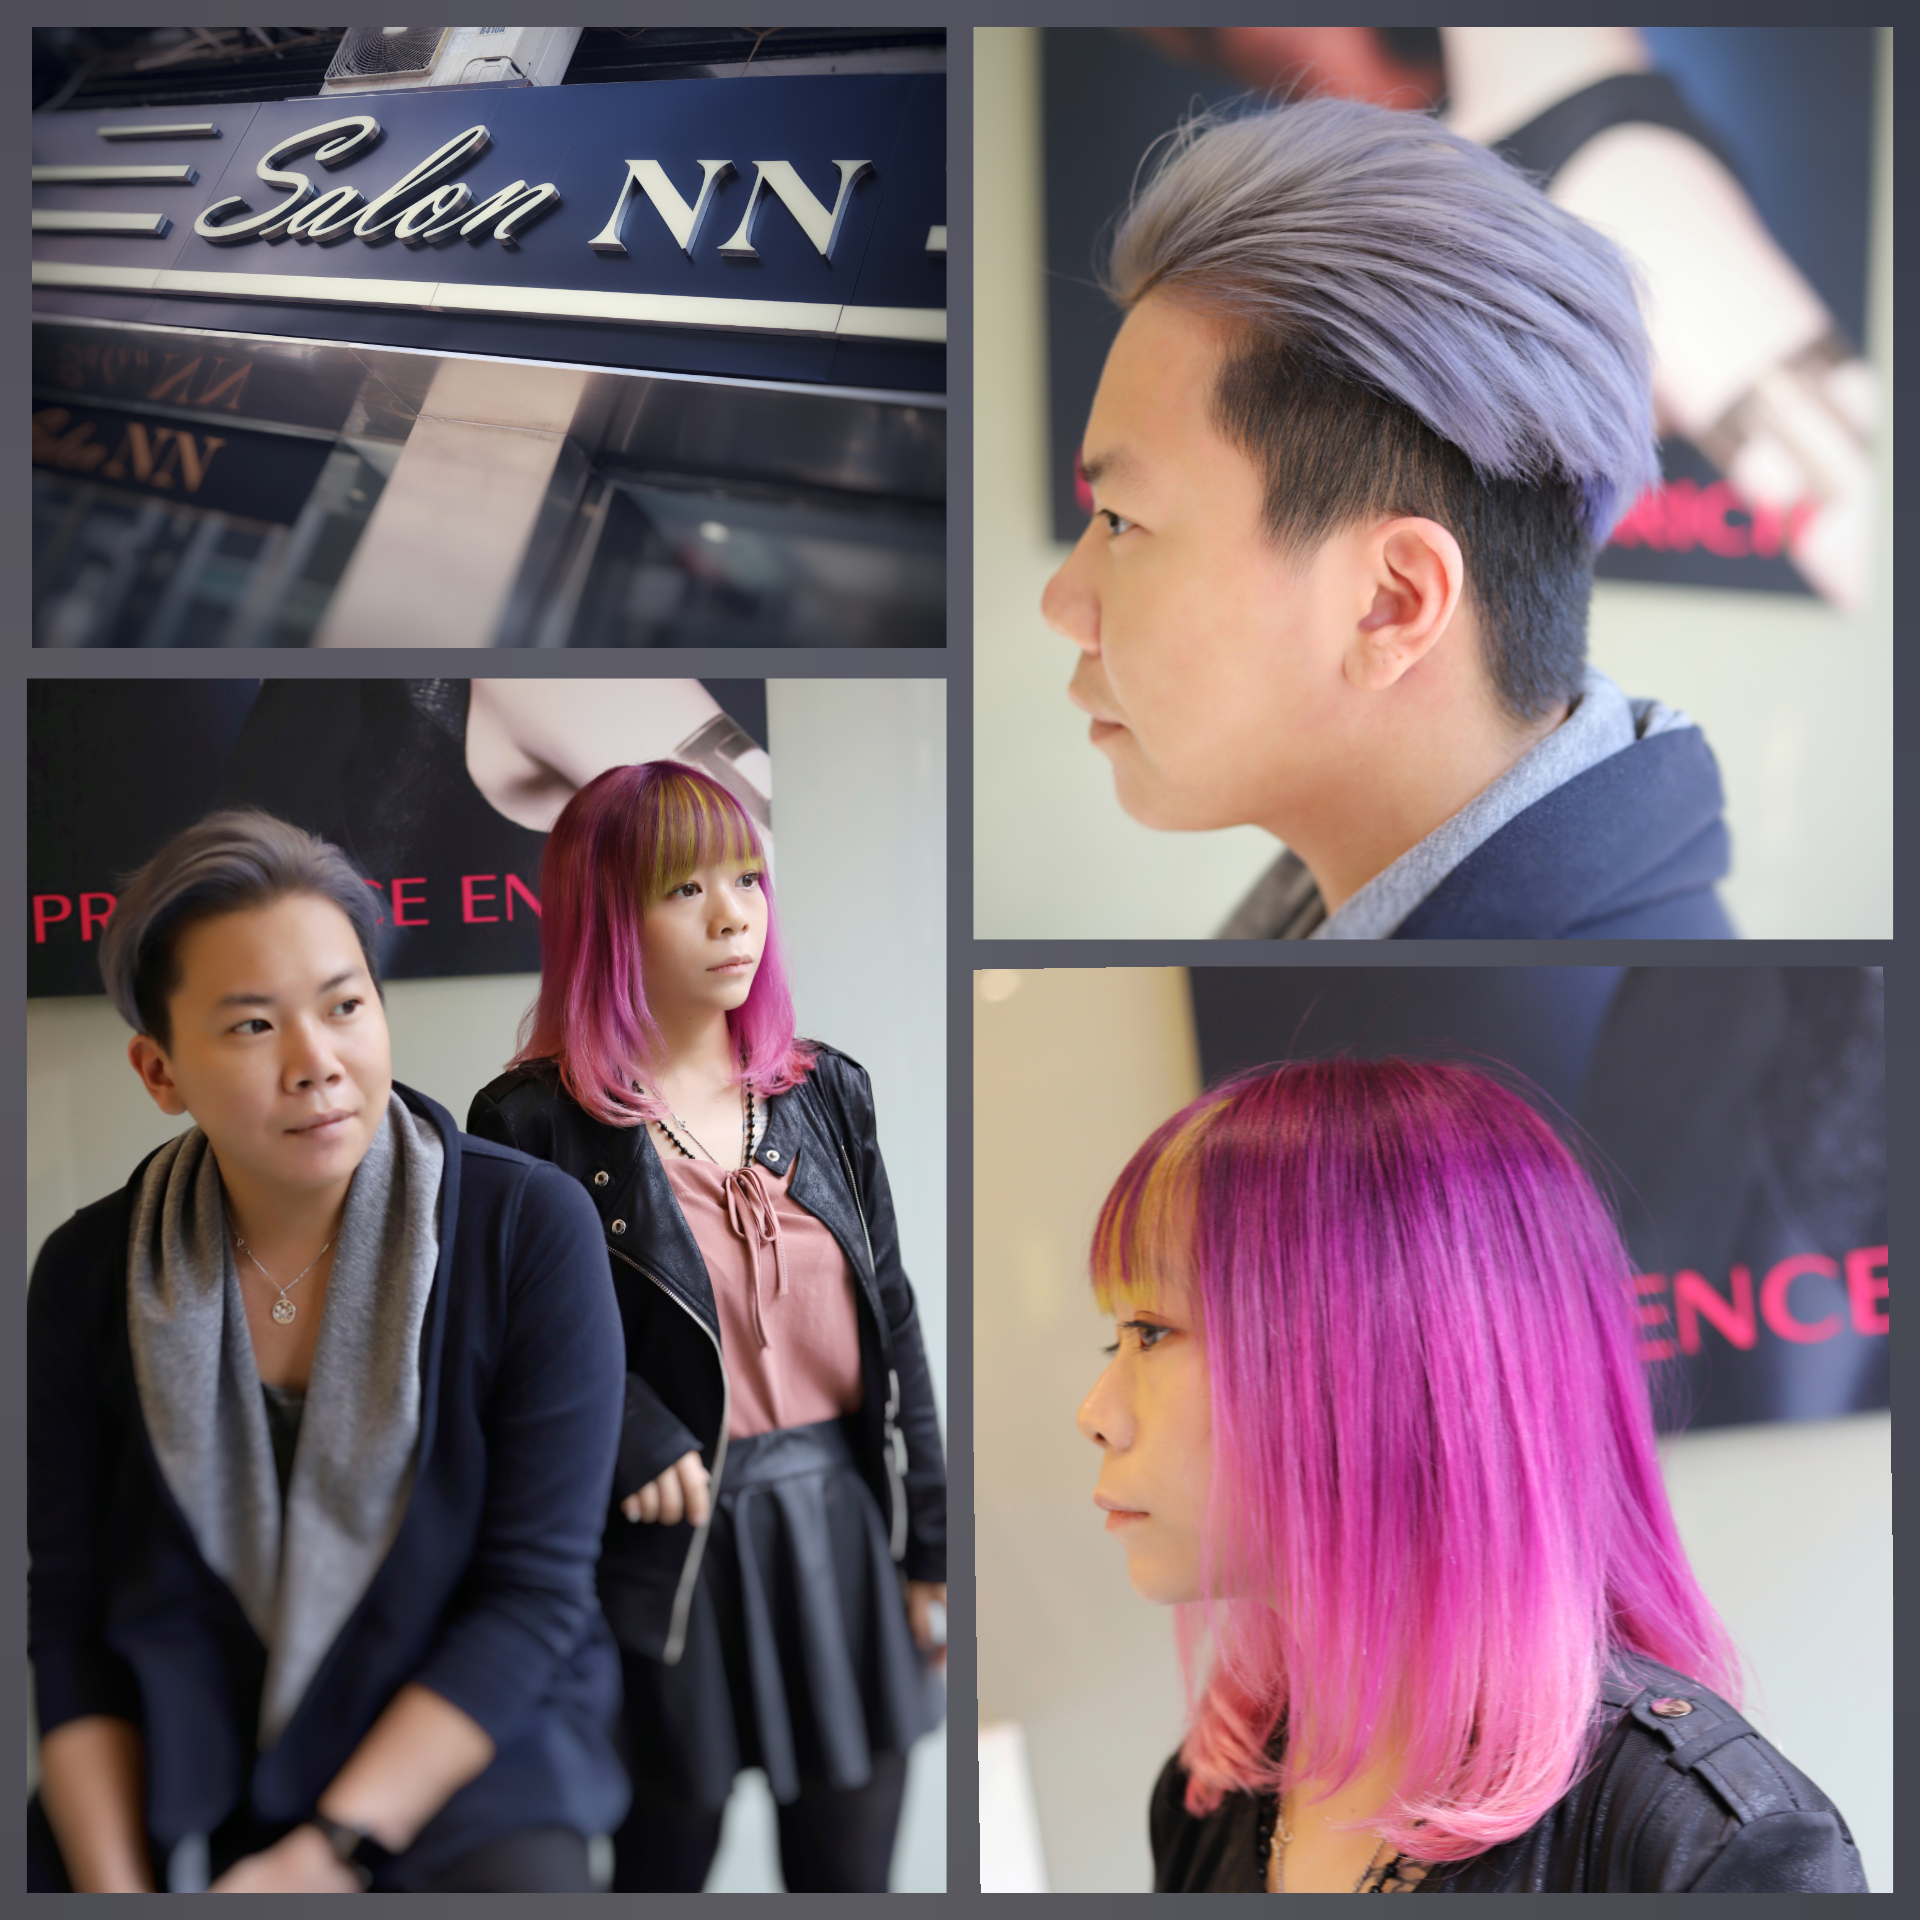 香港美髮網 HK Hair Salon 髮型屋Salon / 髮型師: Salon NN